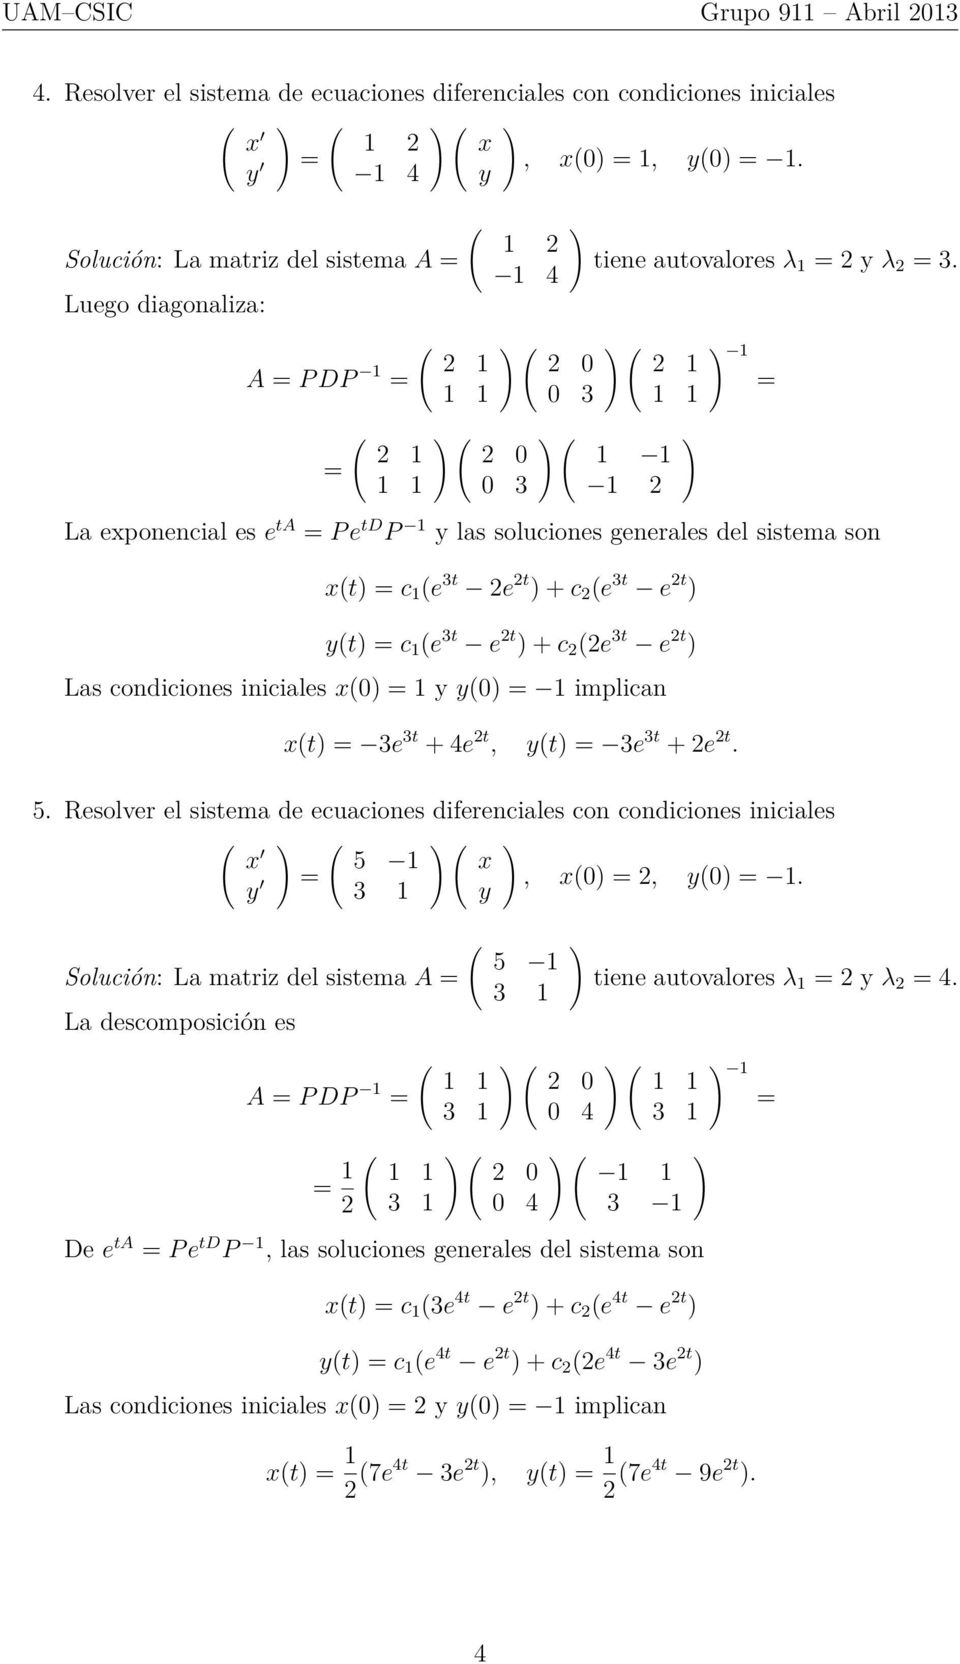 implican t e t + 4e 2t, t e t + 2e 2t 5 Resolver el sistema de ecuaciones diferenciales con condiciones iniciales 5 1, 0 2, 0 1 1 Solución: La matriz del sistema A La descomposición es 5 1 1 tiene